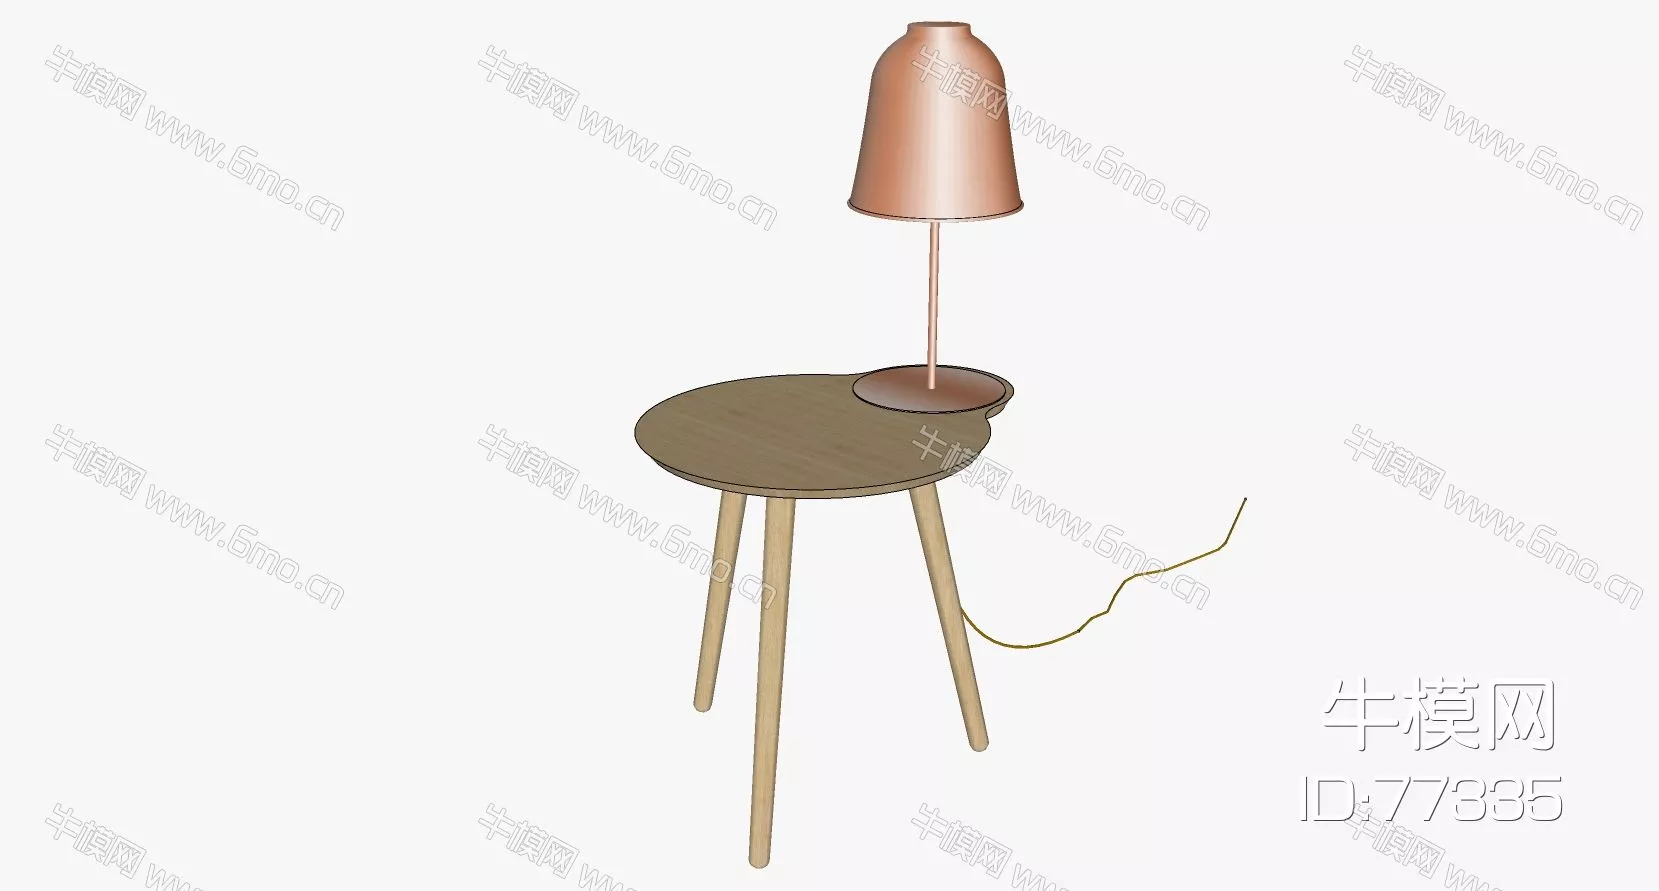 NORDIC SIDE TABLE - SKETCHUP 3D MODEL - ENSCAPE - 77335